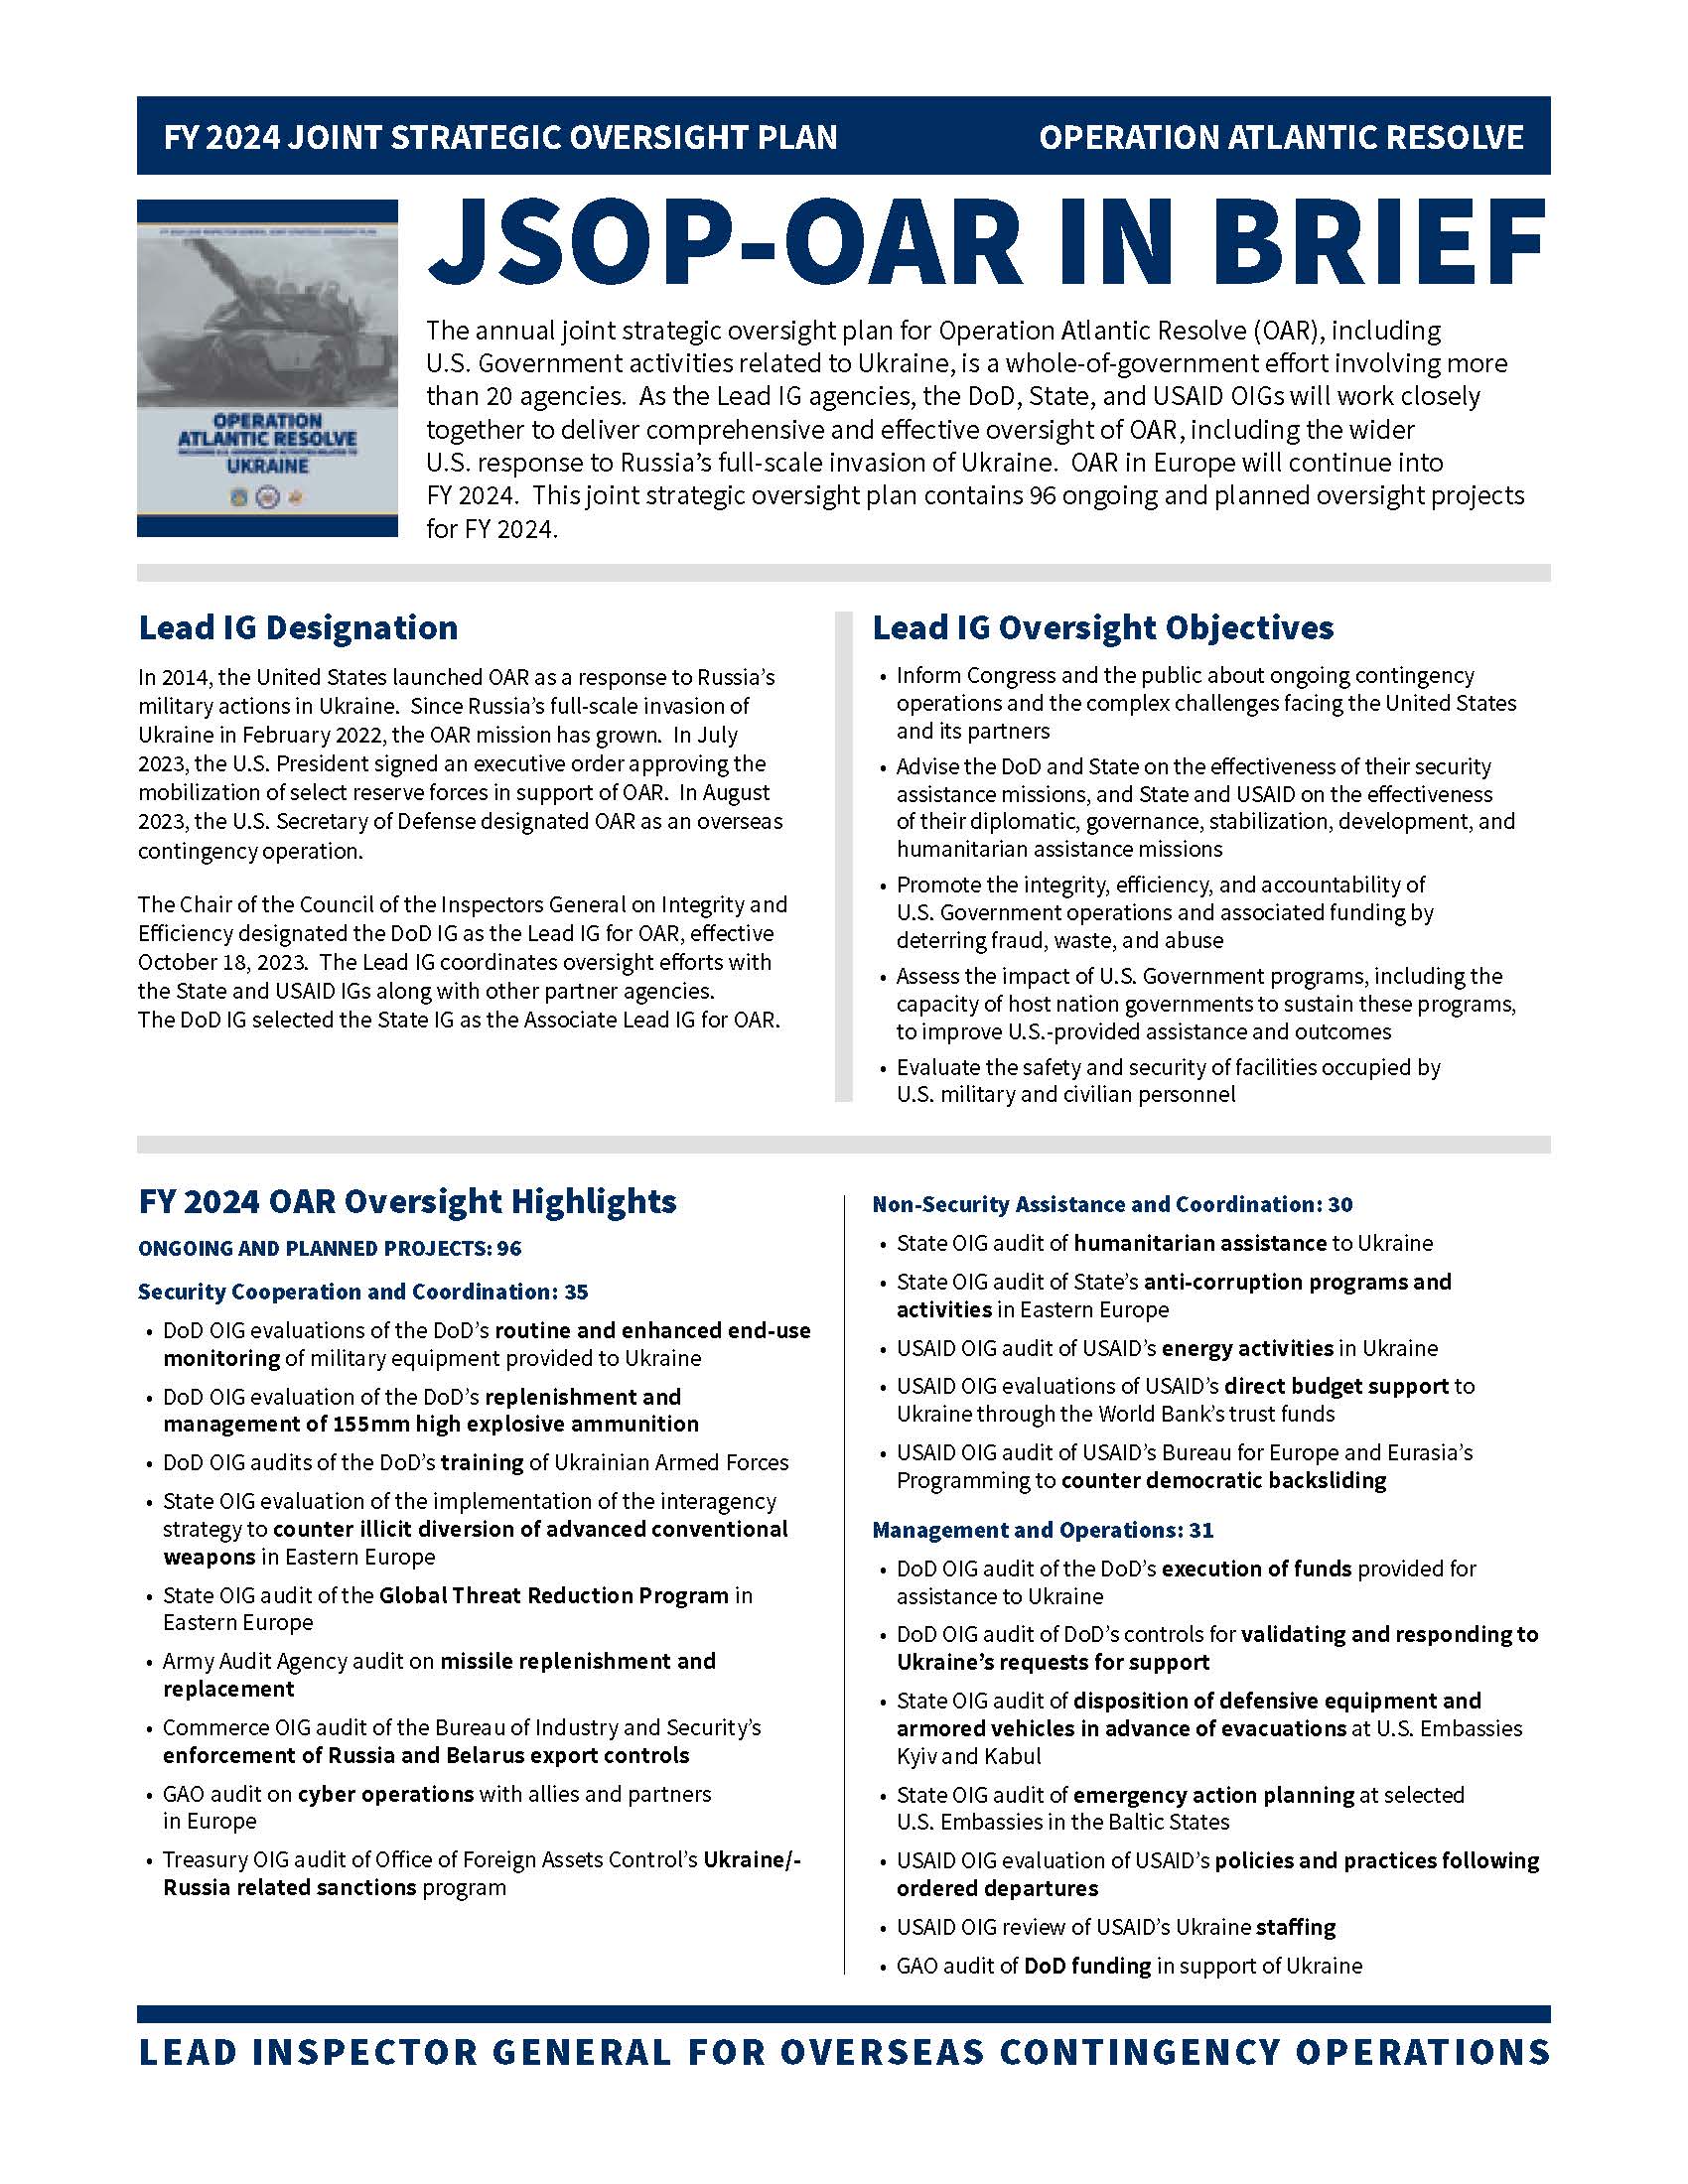 OAR JSOP One page overview